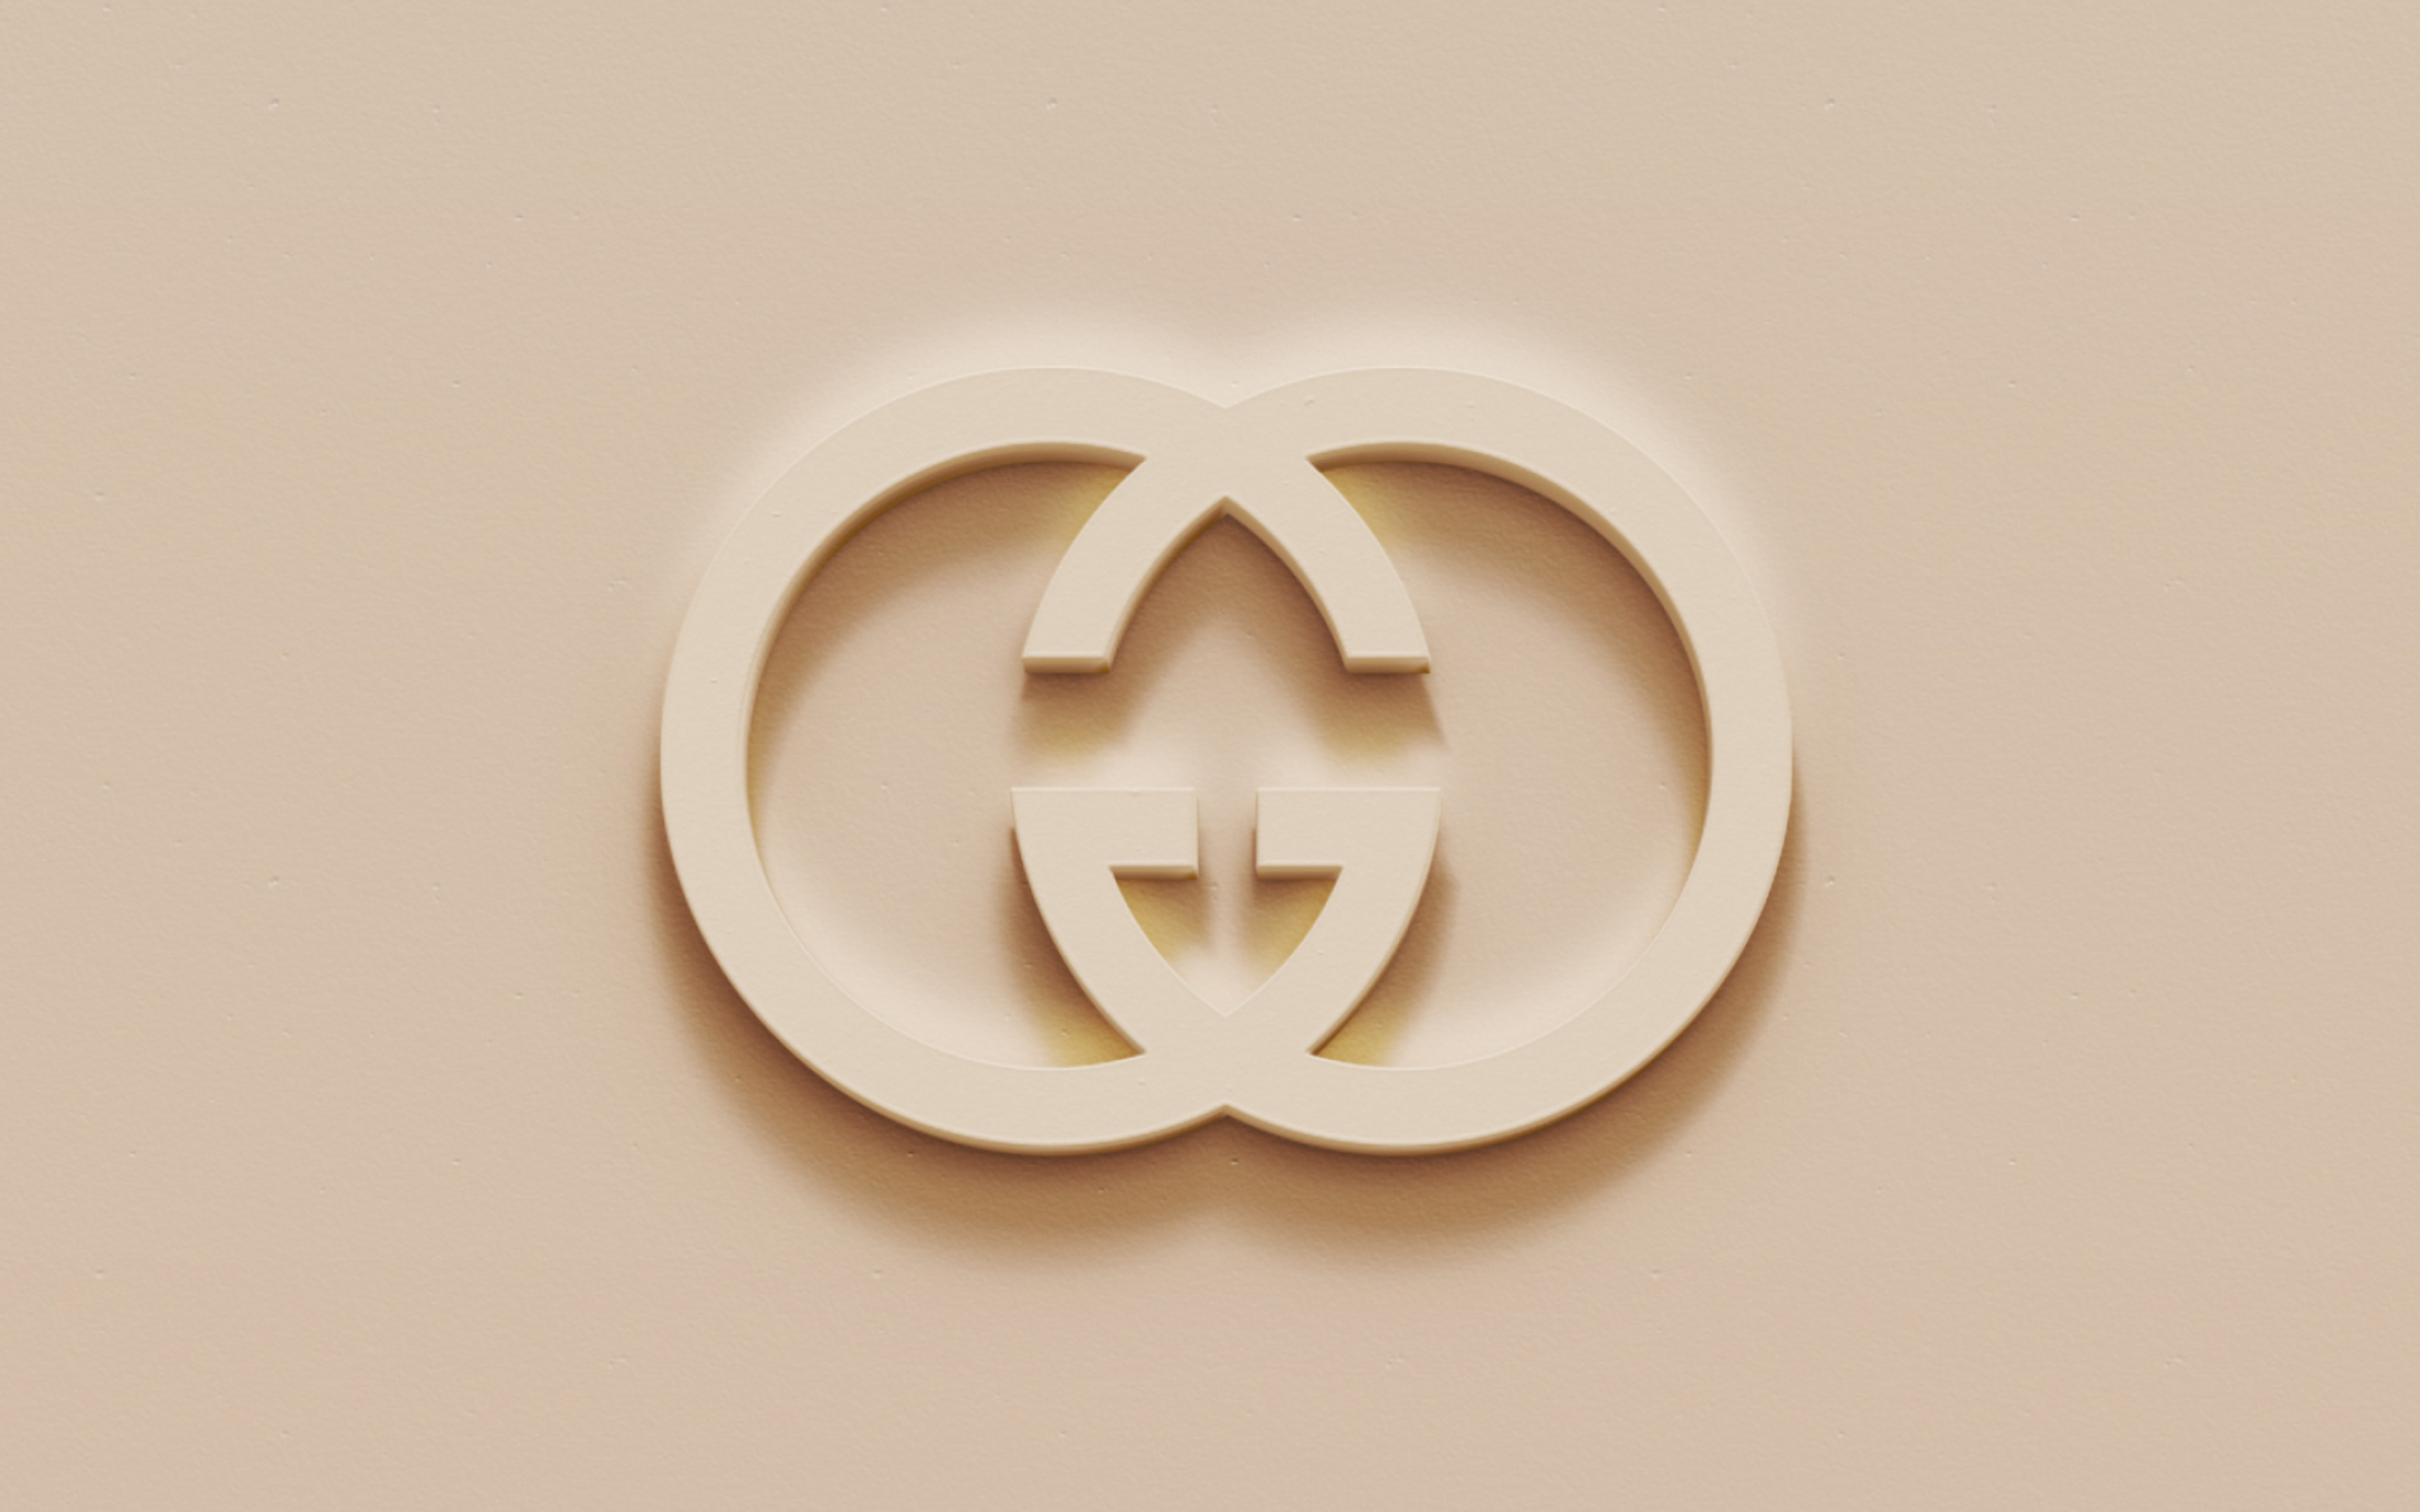 Gucci logo art, Brown plaster background, 3D emblem, Desktop images, 2560x1600 HD Desktop